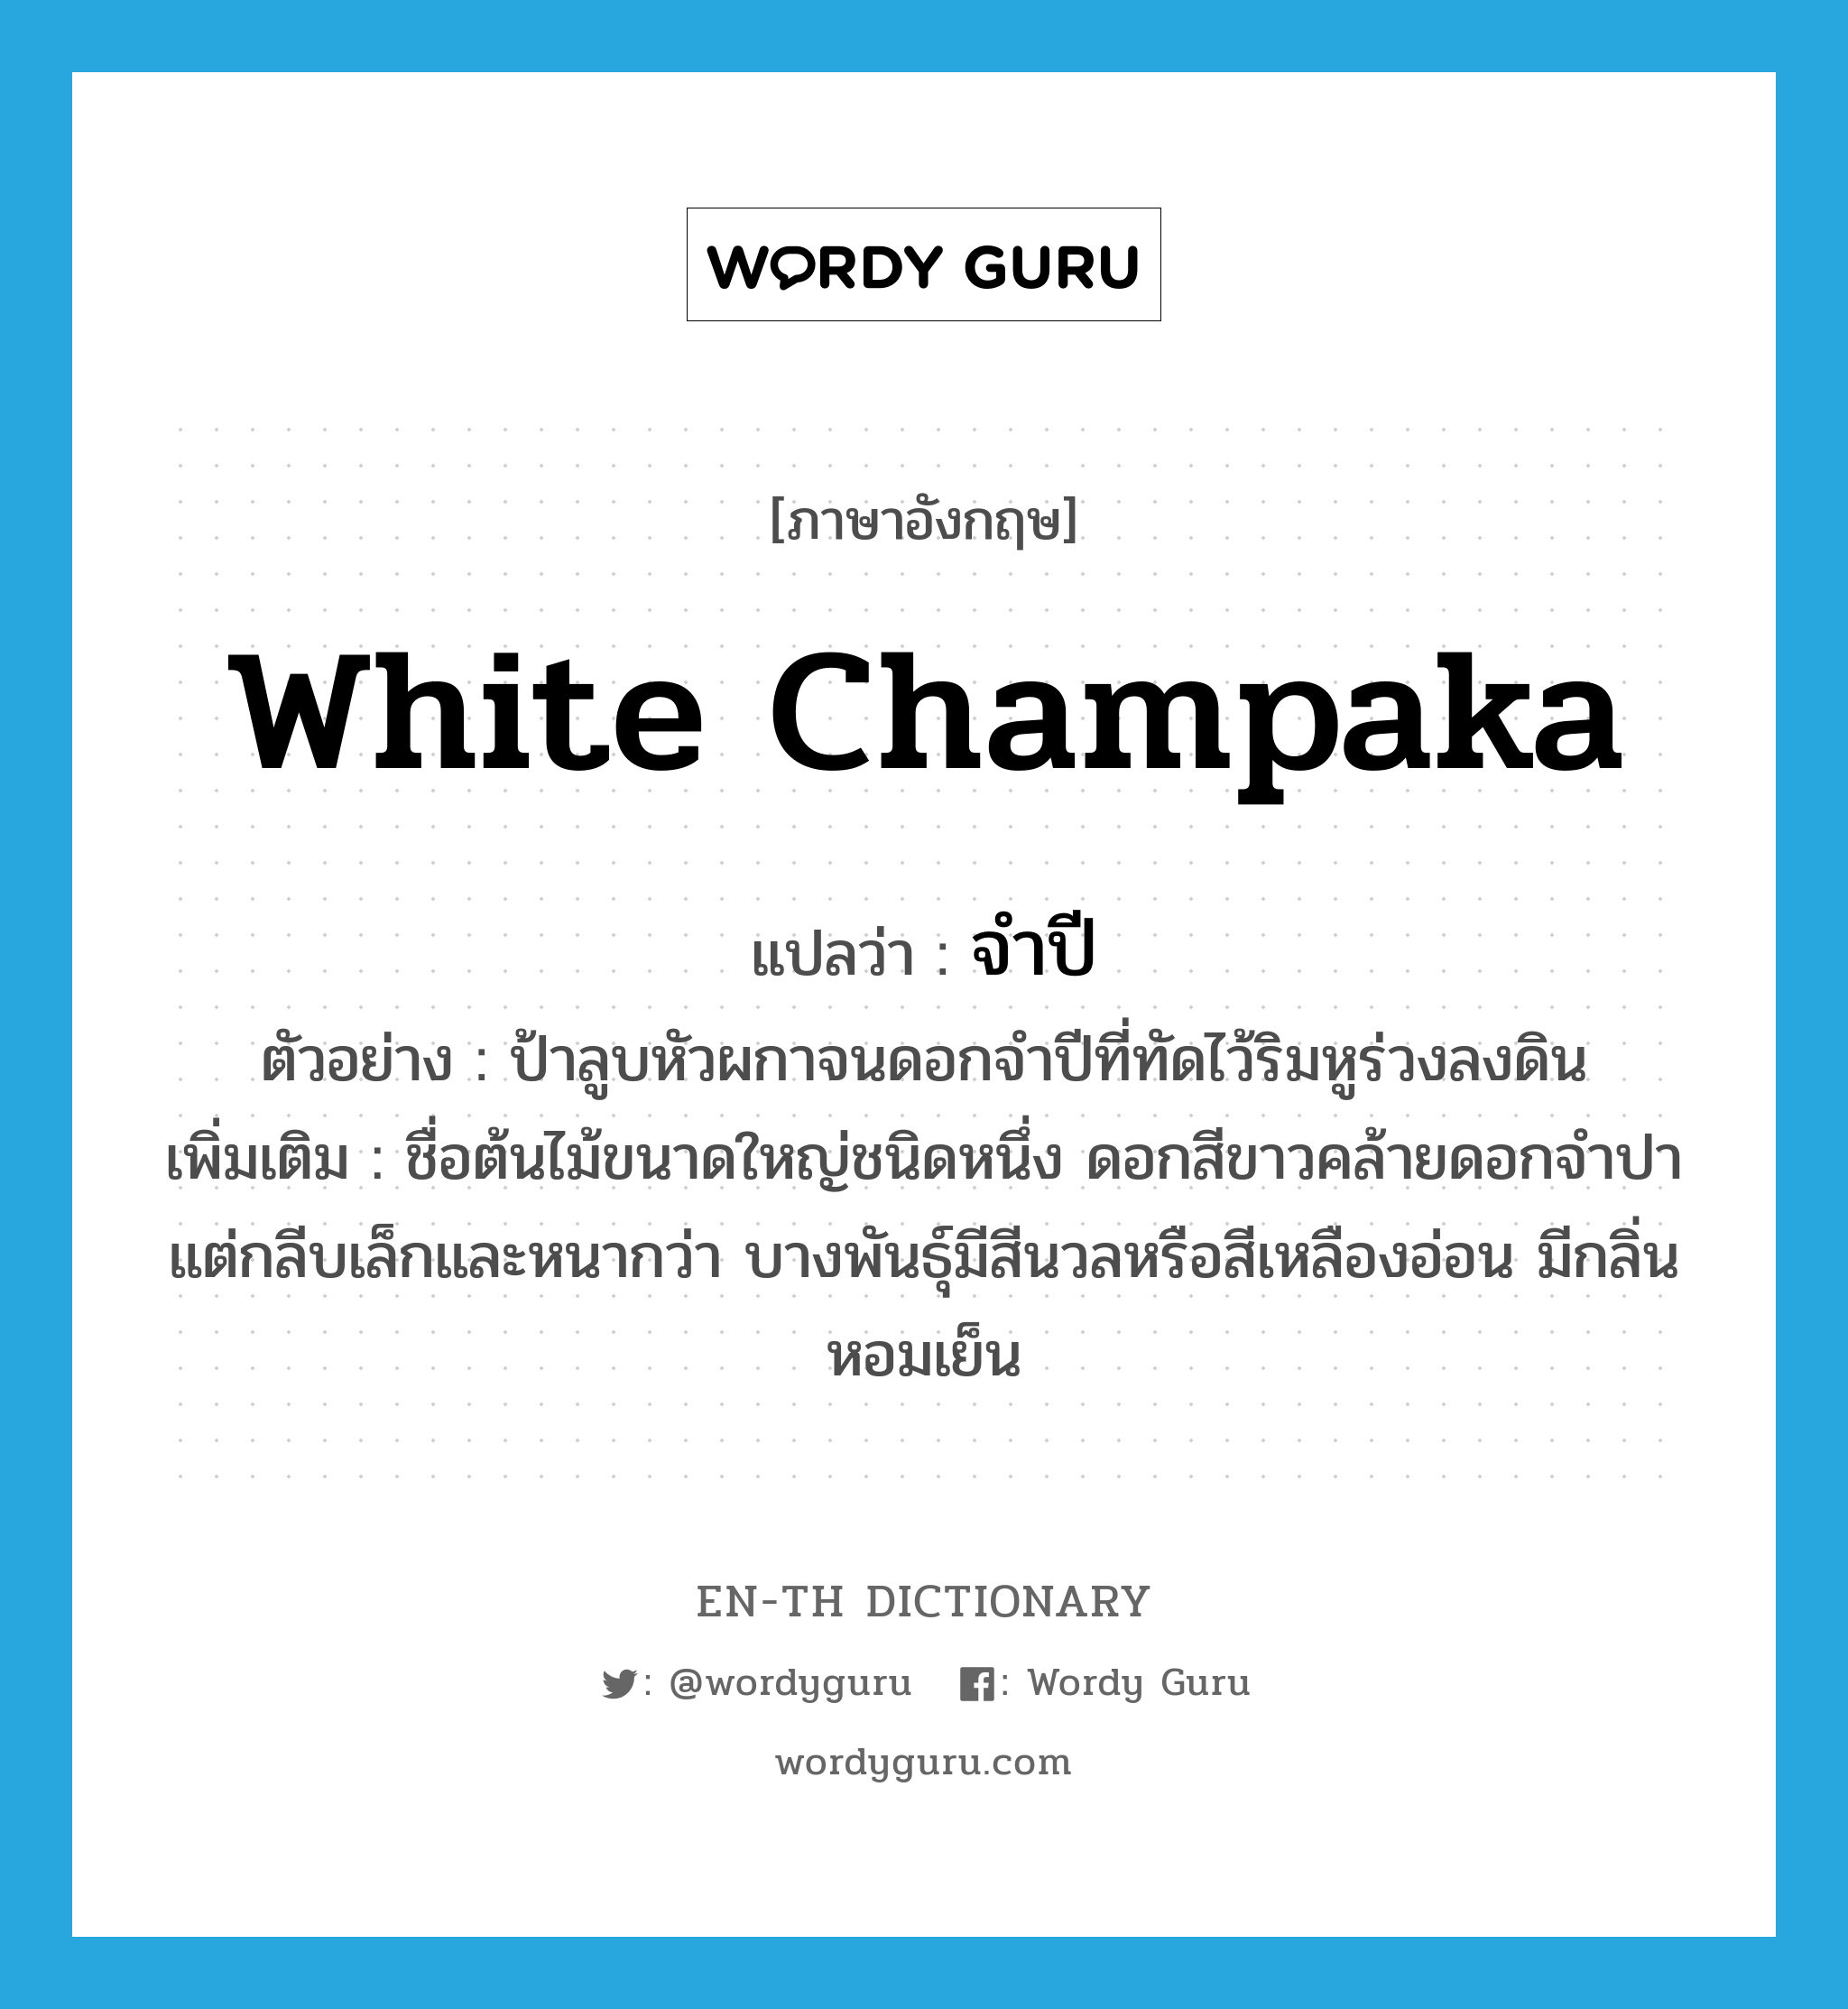 White Champaka แปลว่า?, คำศัพท์ภาษาอังกฤษ White Champaka แปลว่า จำปี ประเภท N ตัวอย่าง ป้าลูบหัวผกาจนดอกจำปีที่ทัดไว้ริมหูร่วงลงดิน เพิ่มเติม ชื่อต้นไม้ขนาดใหญ่ชนิดหนึ่ง ดอกสีขาวคล้ายดอกจำปา แต่กลีบเล็กและหนากว่า บางพันธุ์มีสีนวลหรือสีเหลืองอ่อน มีกลิ่นหอมเย็น หมวด N